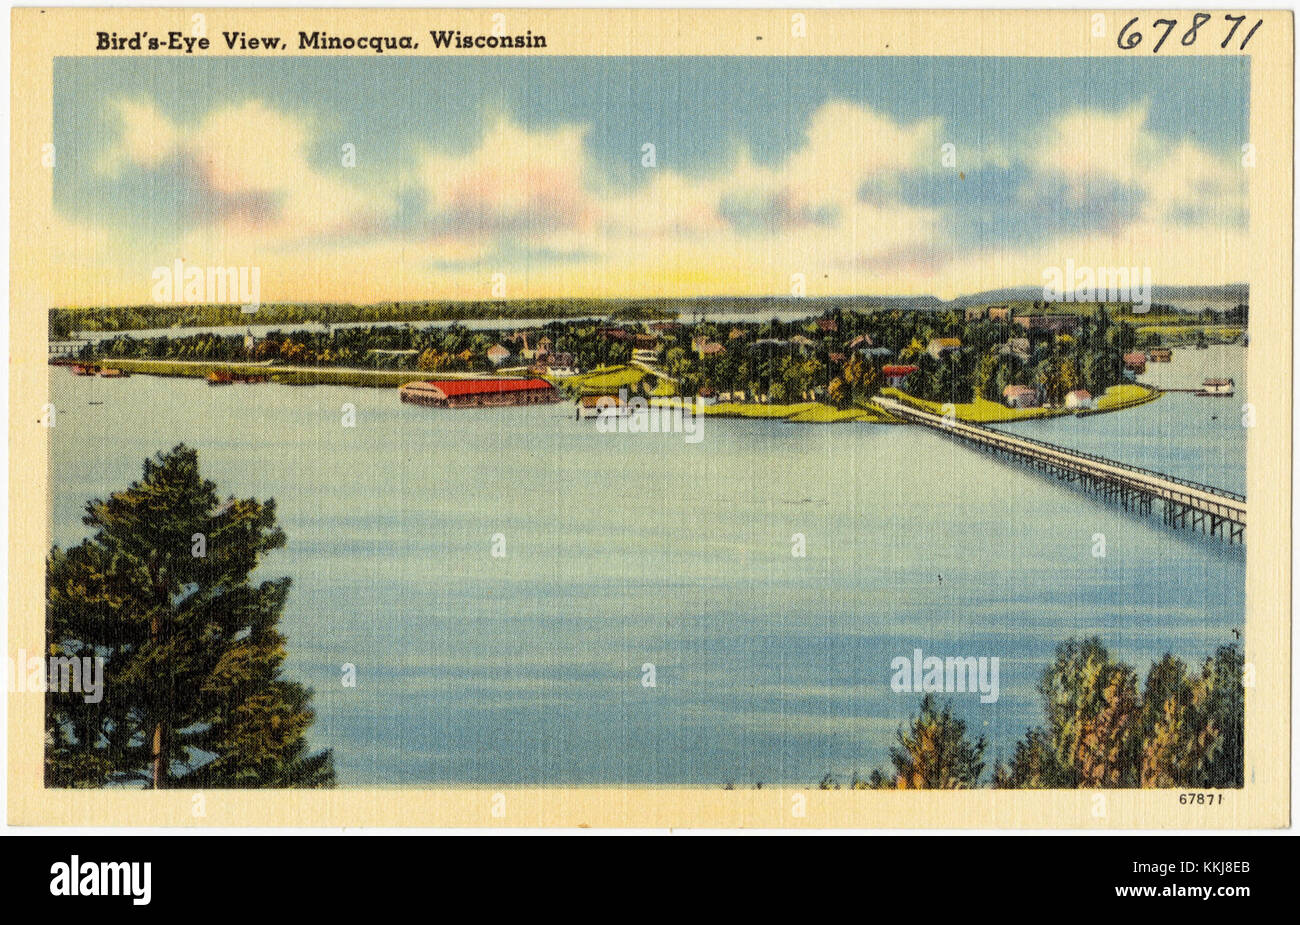 Vue plongeante, Minocqua, Wisconsin (67871) Banque D'Images